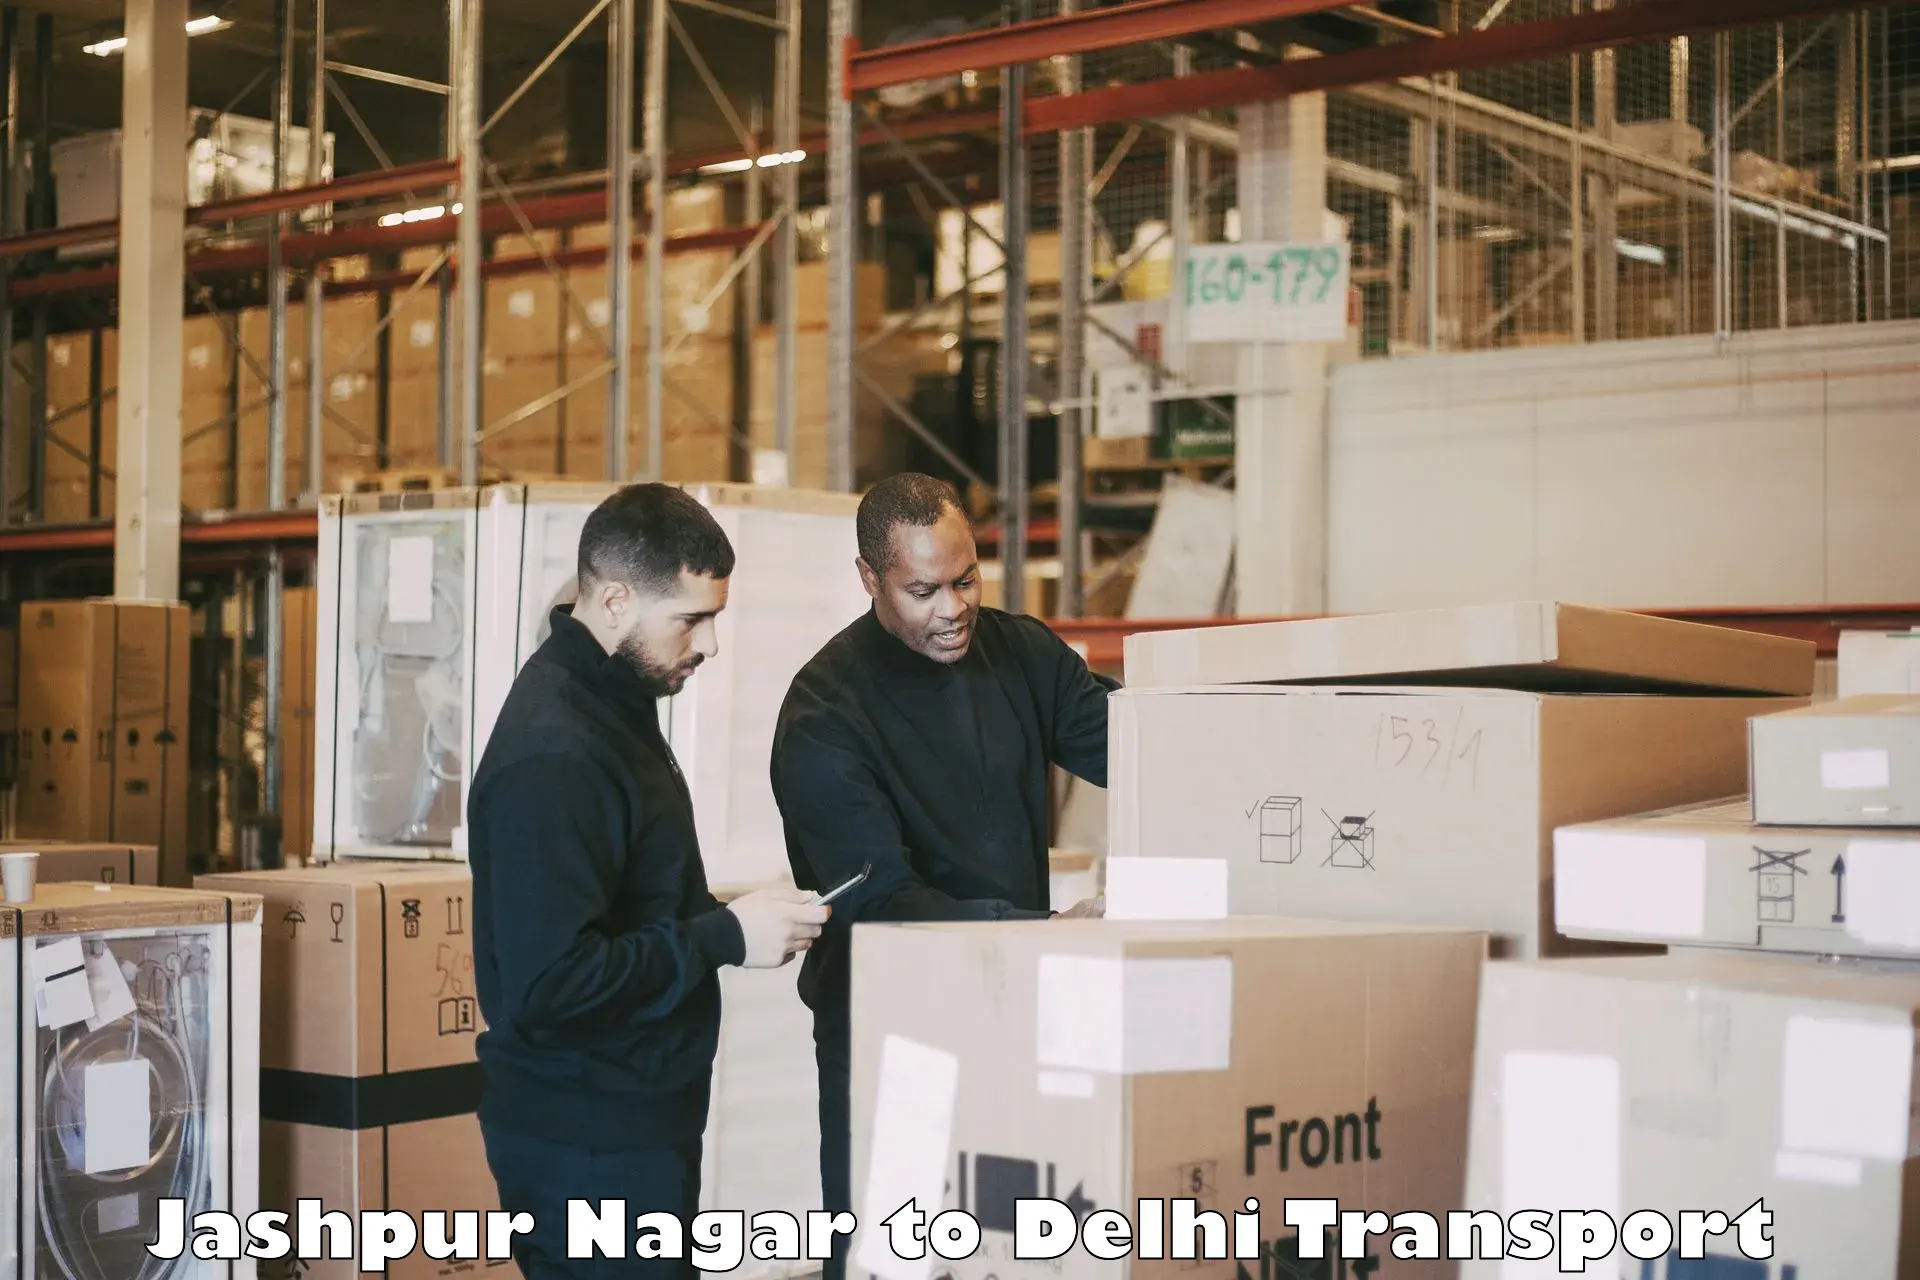 Transportation solution services Jashpur Nagar to Delhi